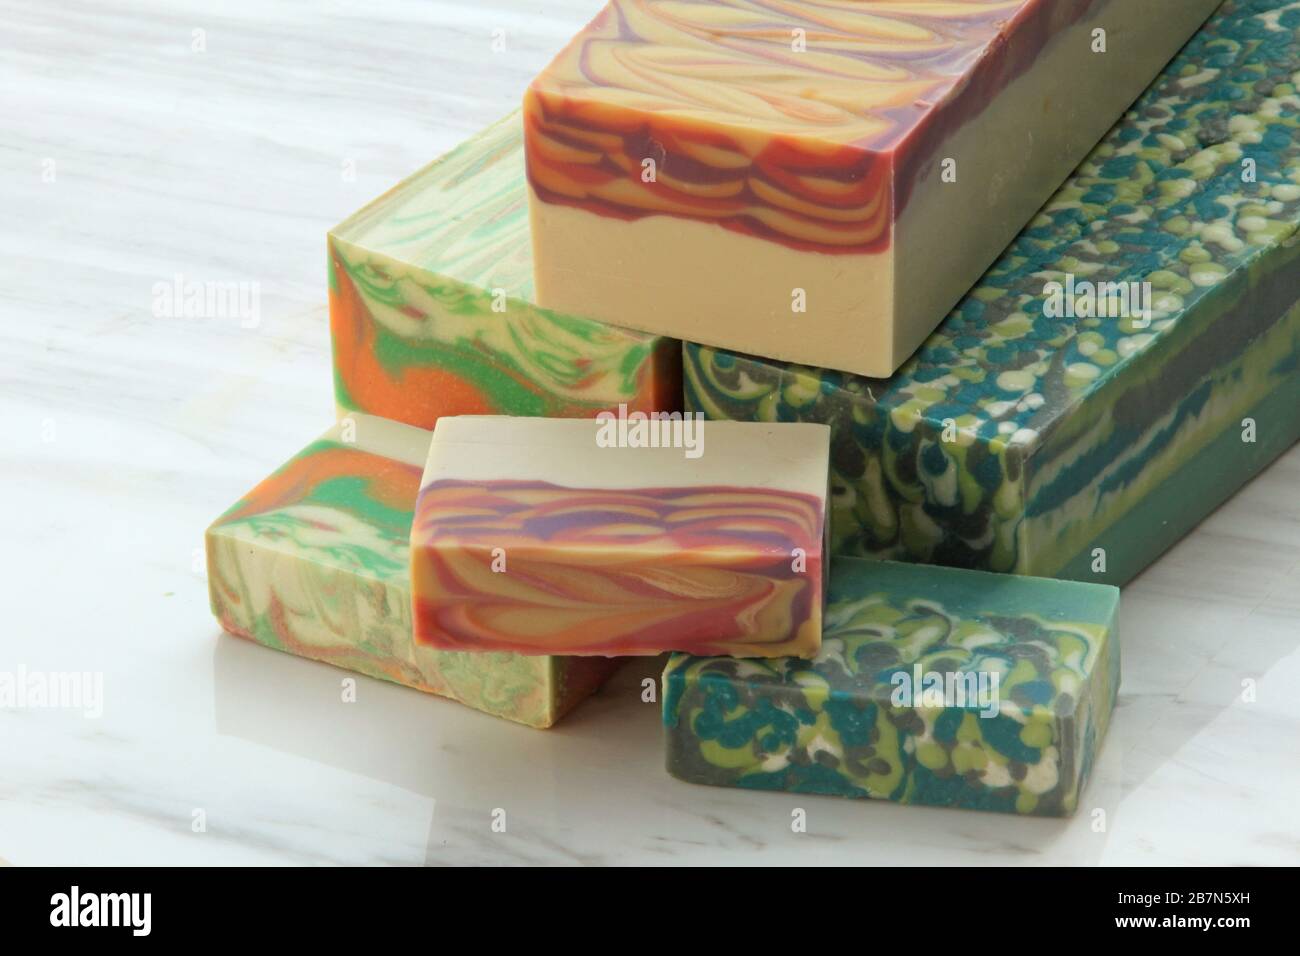 3 blocchi di sapone artigianale sul display Foto Stock